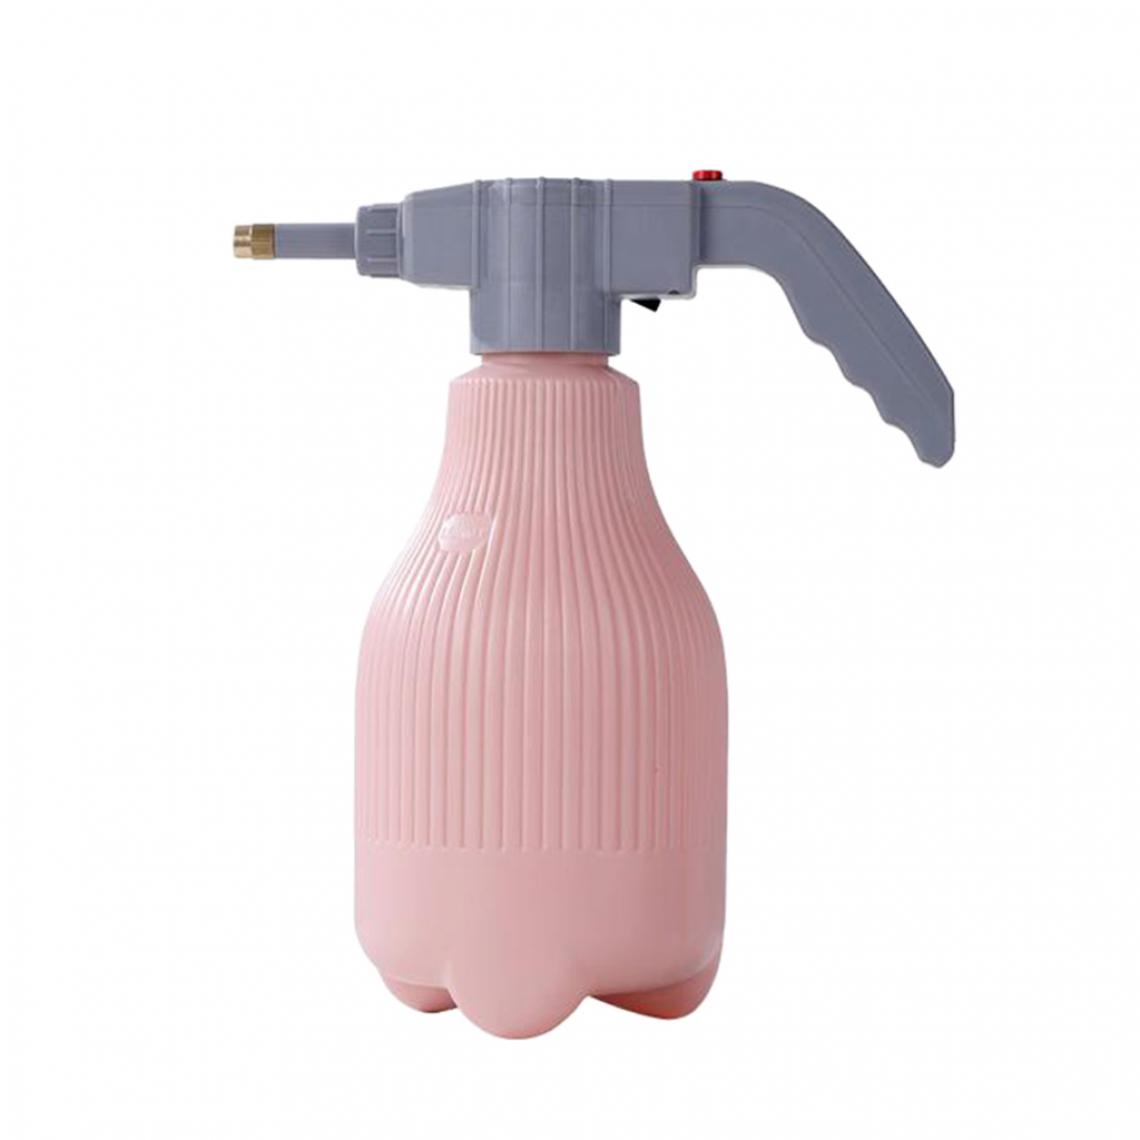 marque generique - Arrosoir Portable USB Plant Mister Spray Bottle Jardinage 1.5L Bleu - Pistolets à peinture